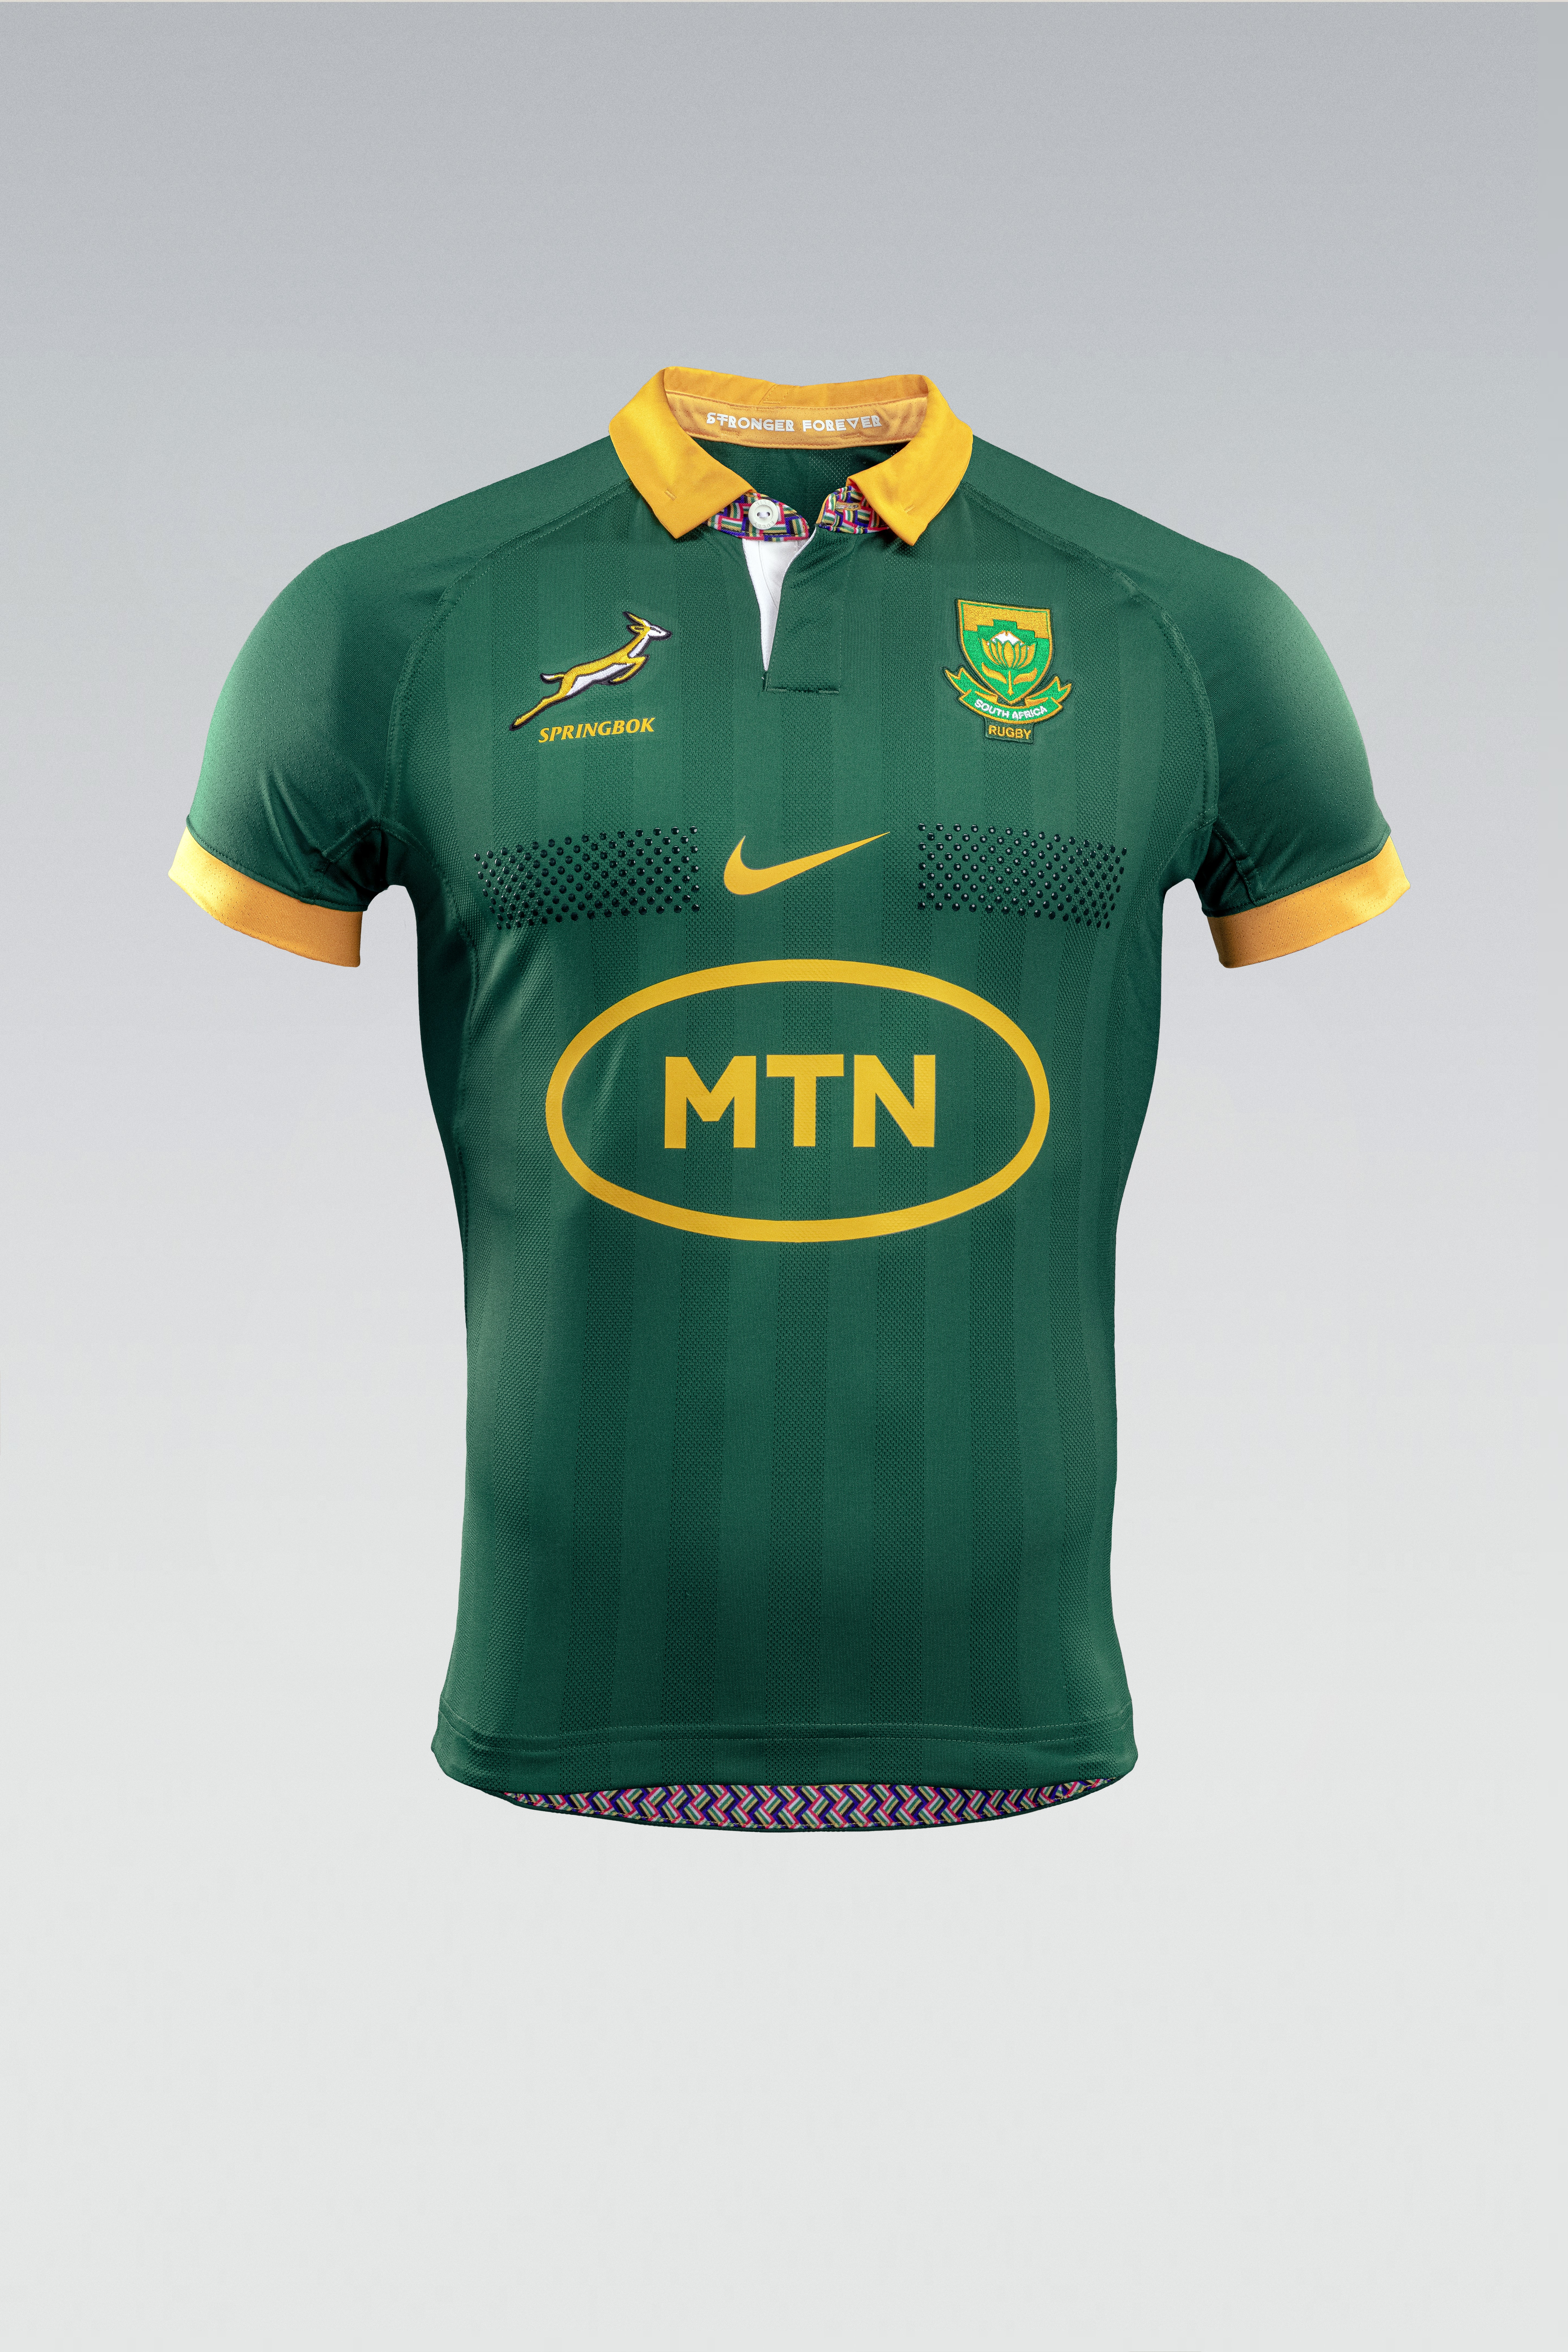 Springboks new kit